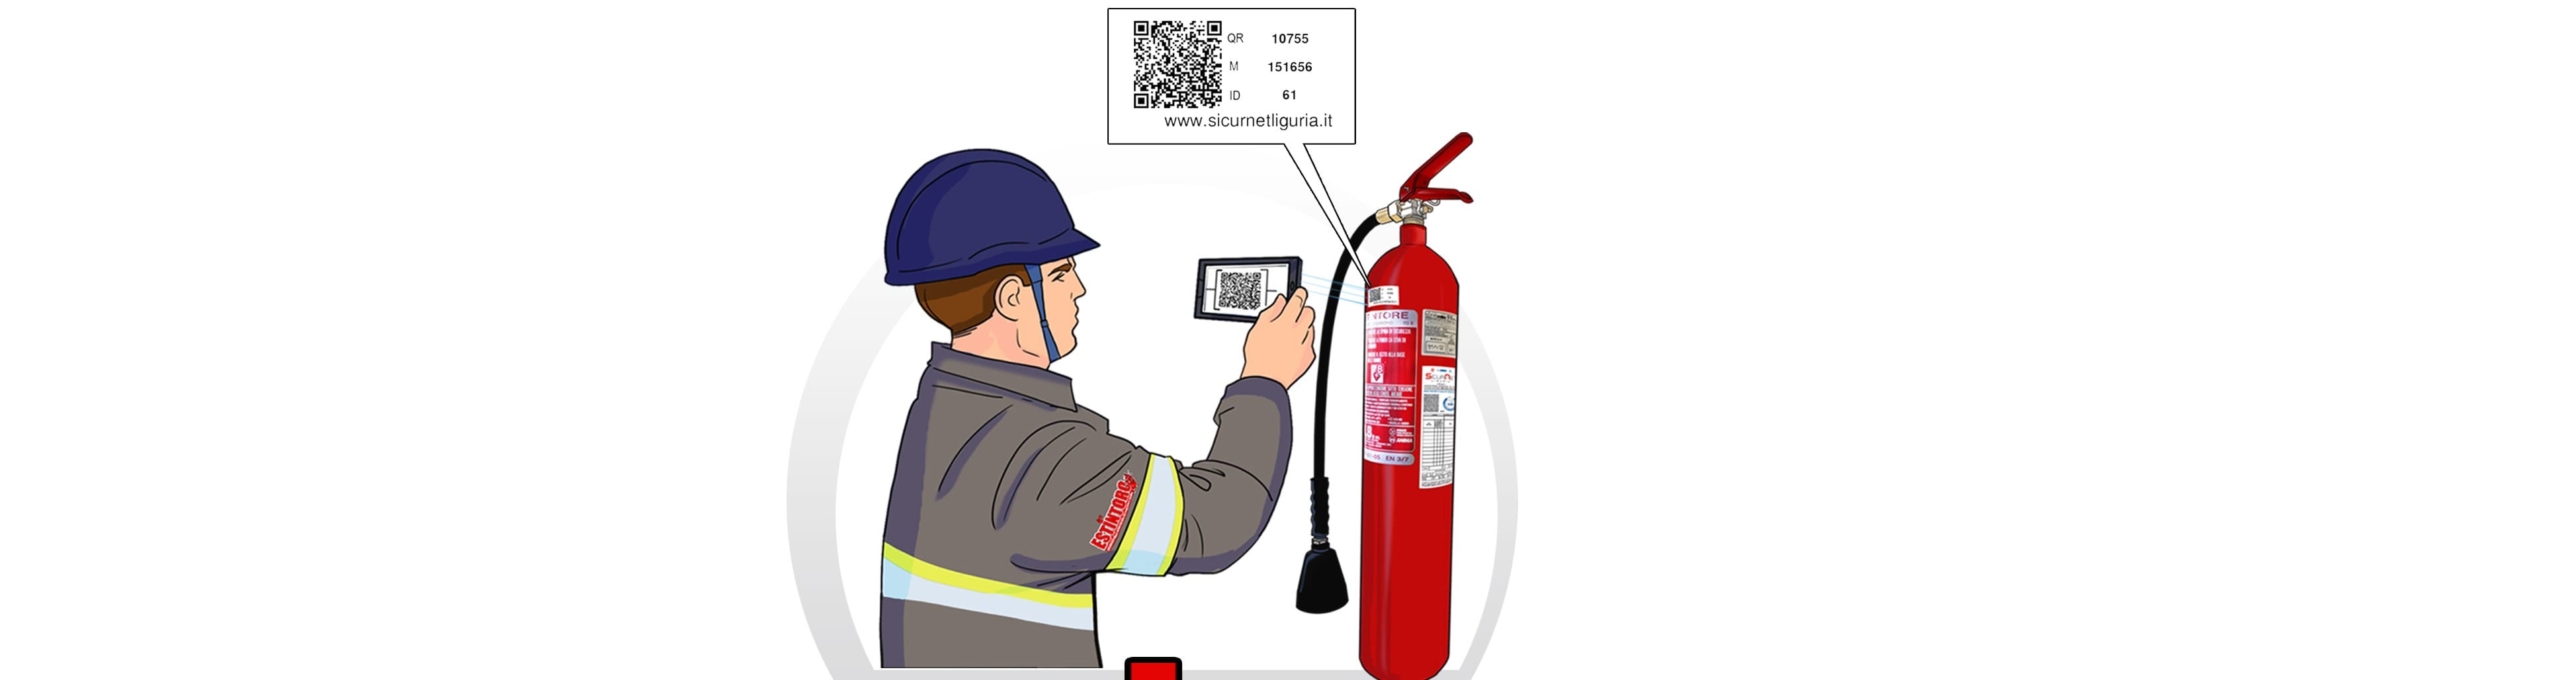 Scansione QR Code Registro Antincendio in Cloud SicurNet Liguria (1)